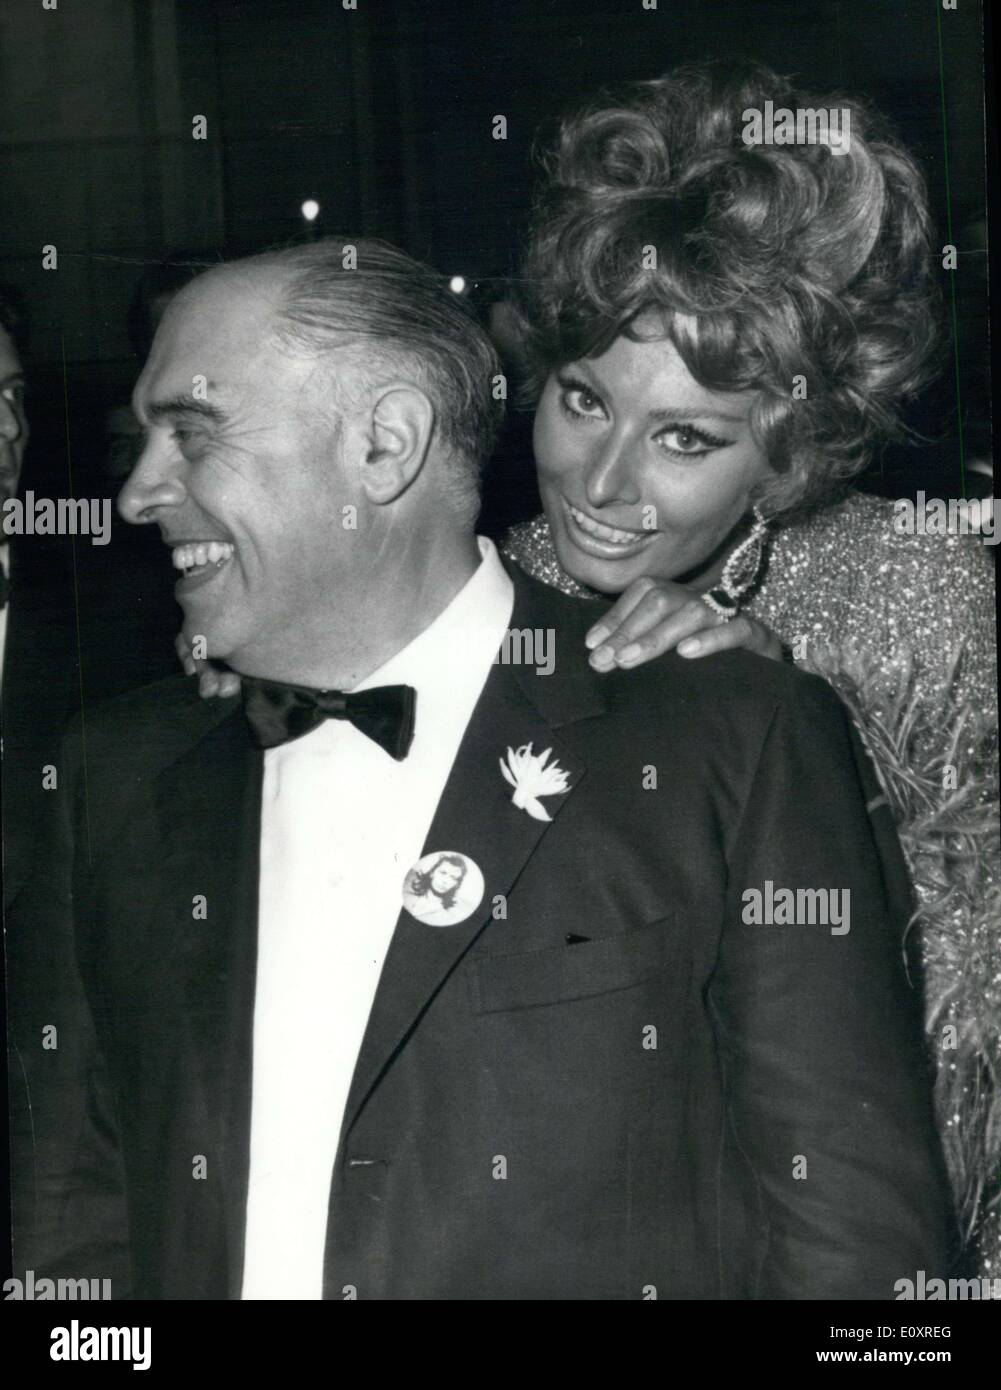 20 octobre 1967 - Gala d'avant pour le dernier film de Sophia Loren ''C' era una volta'' (il fut un temps), aujourd'hui, nuit au Théâtre San Carlo de Naples. Au cours de l'action de ce film, Sophia Loren a perdu son bébé. Photo, Sophia Loren et son mari le producteur Carlo Ponti. Sophia porte une robe doré. Banque D'Images